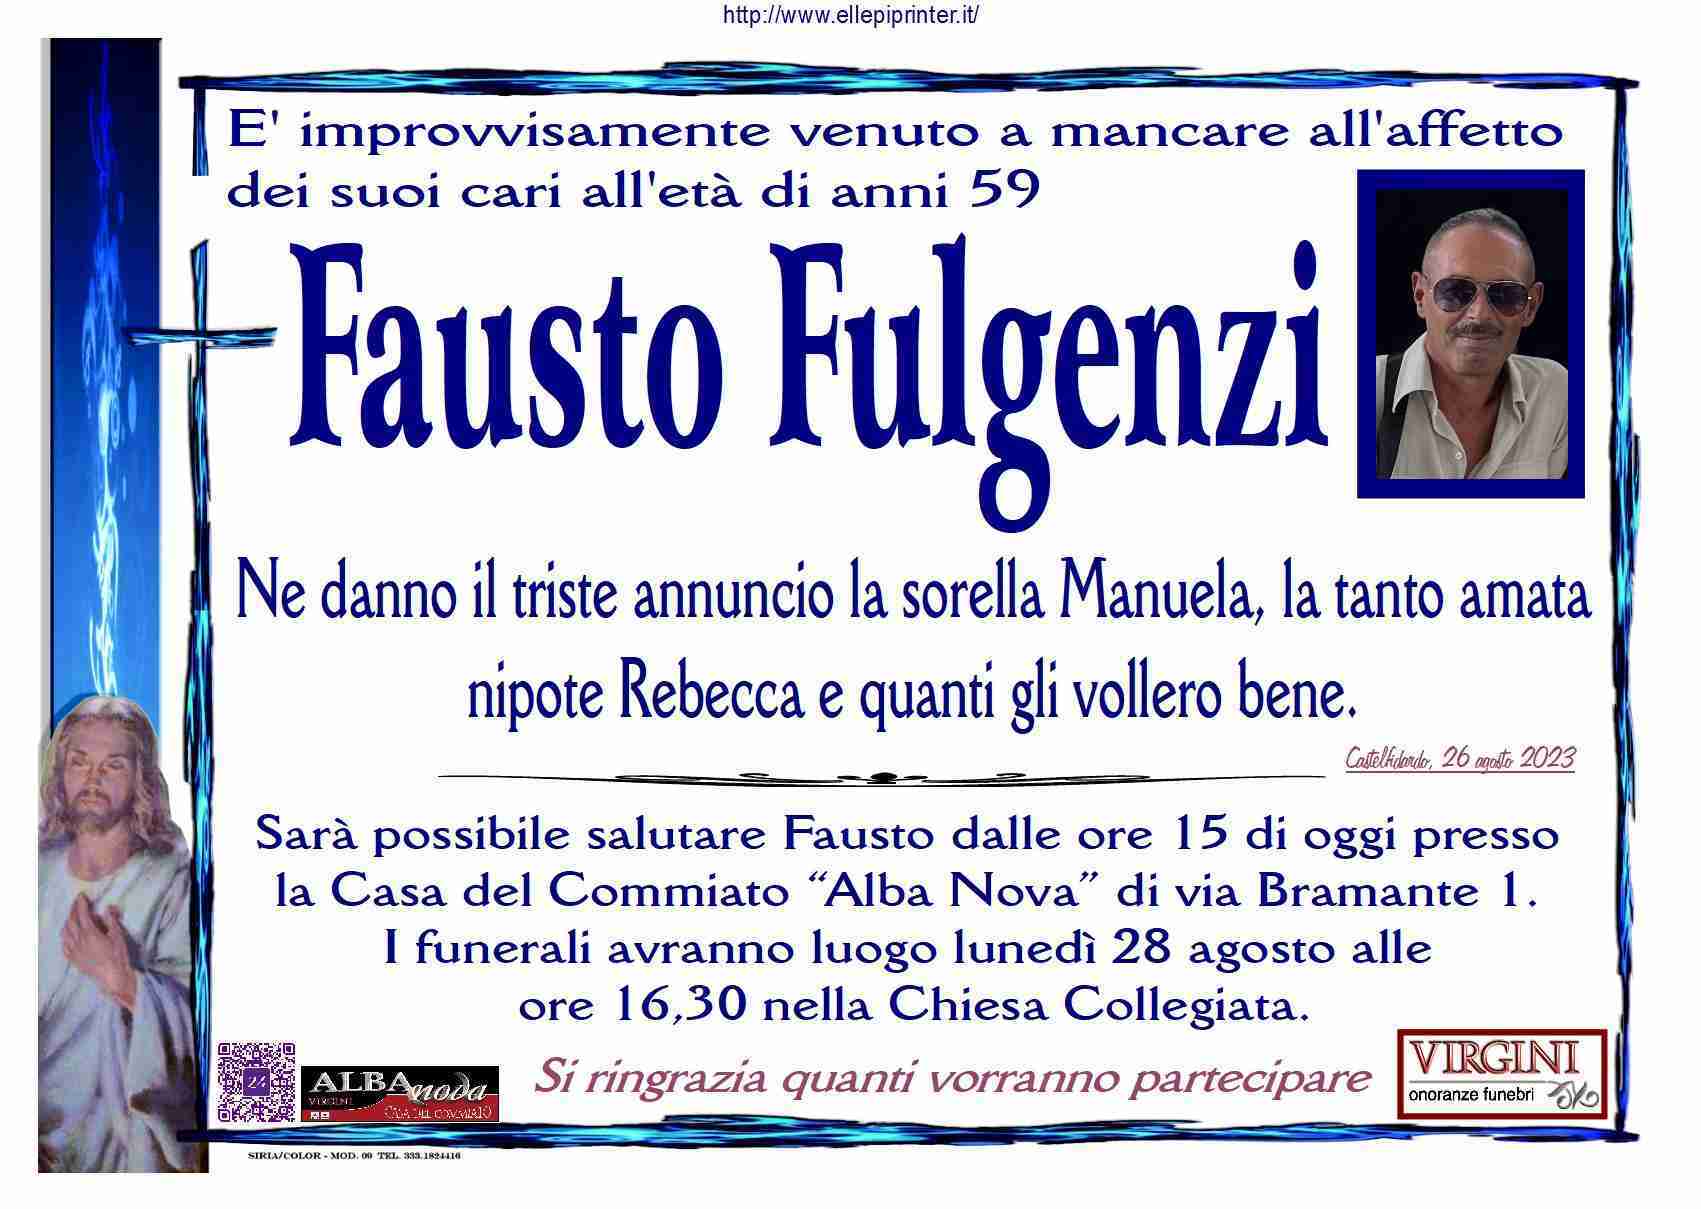 Fausto Fulgenzi